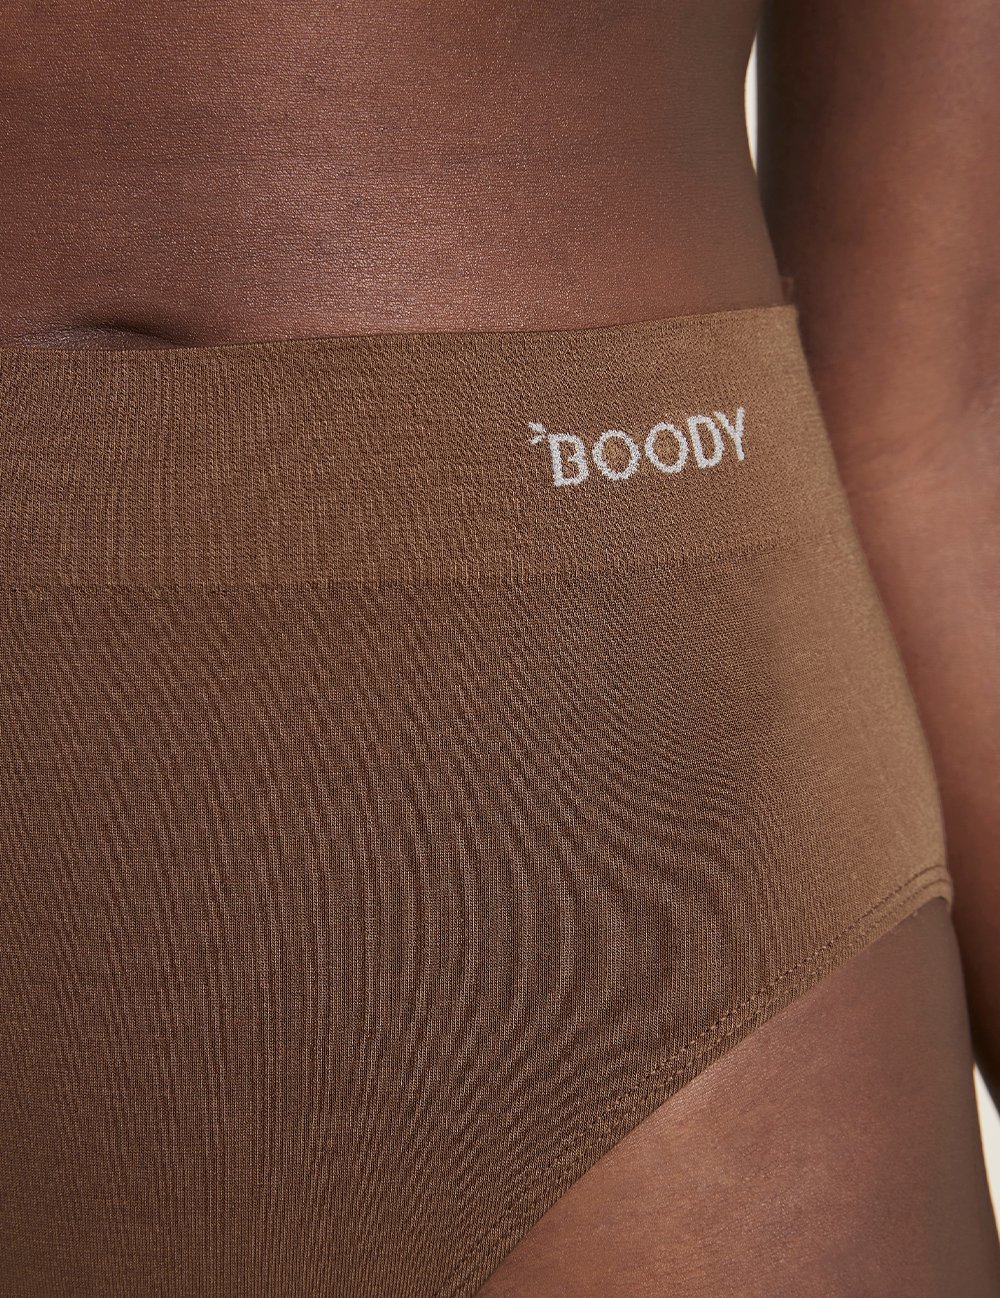 Boody aluspüksid Full Brief, Nude 6 Boody - HellyK - Kvaliteetsed lasteriided, villariided, barefoot jalatsid